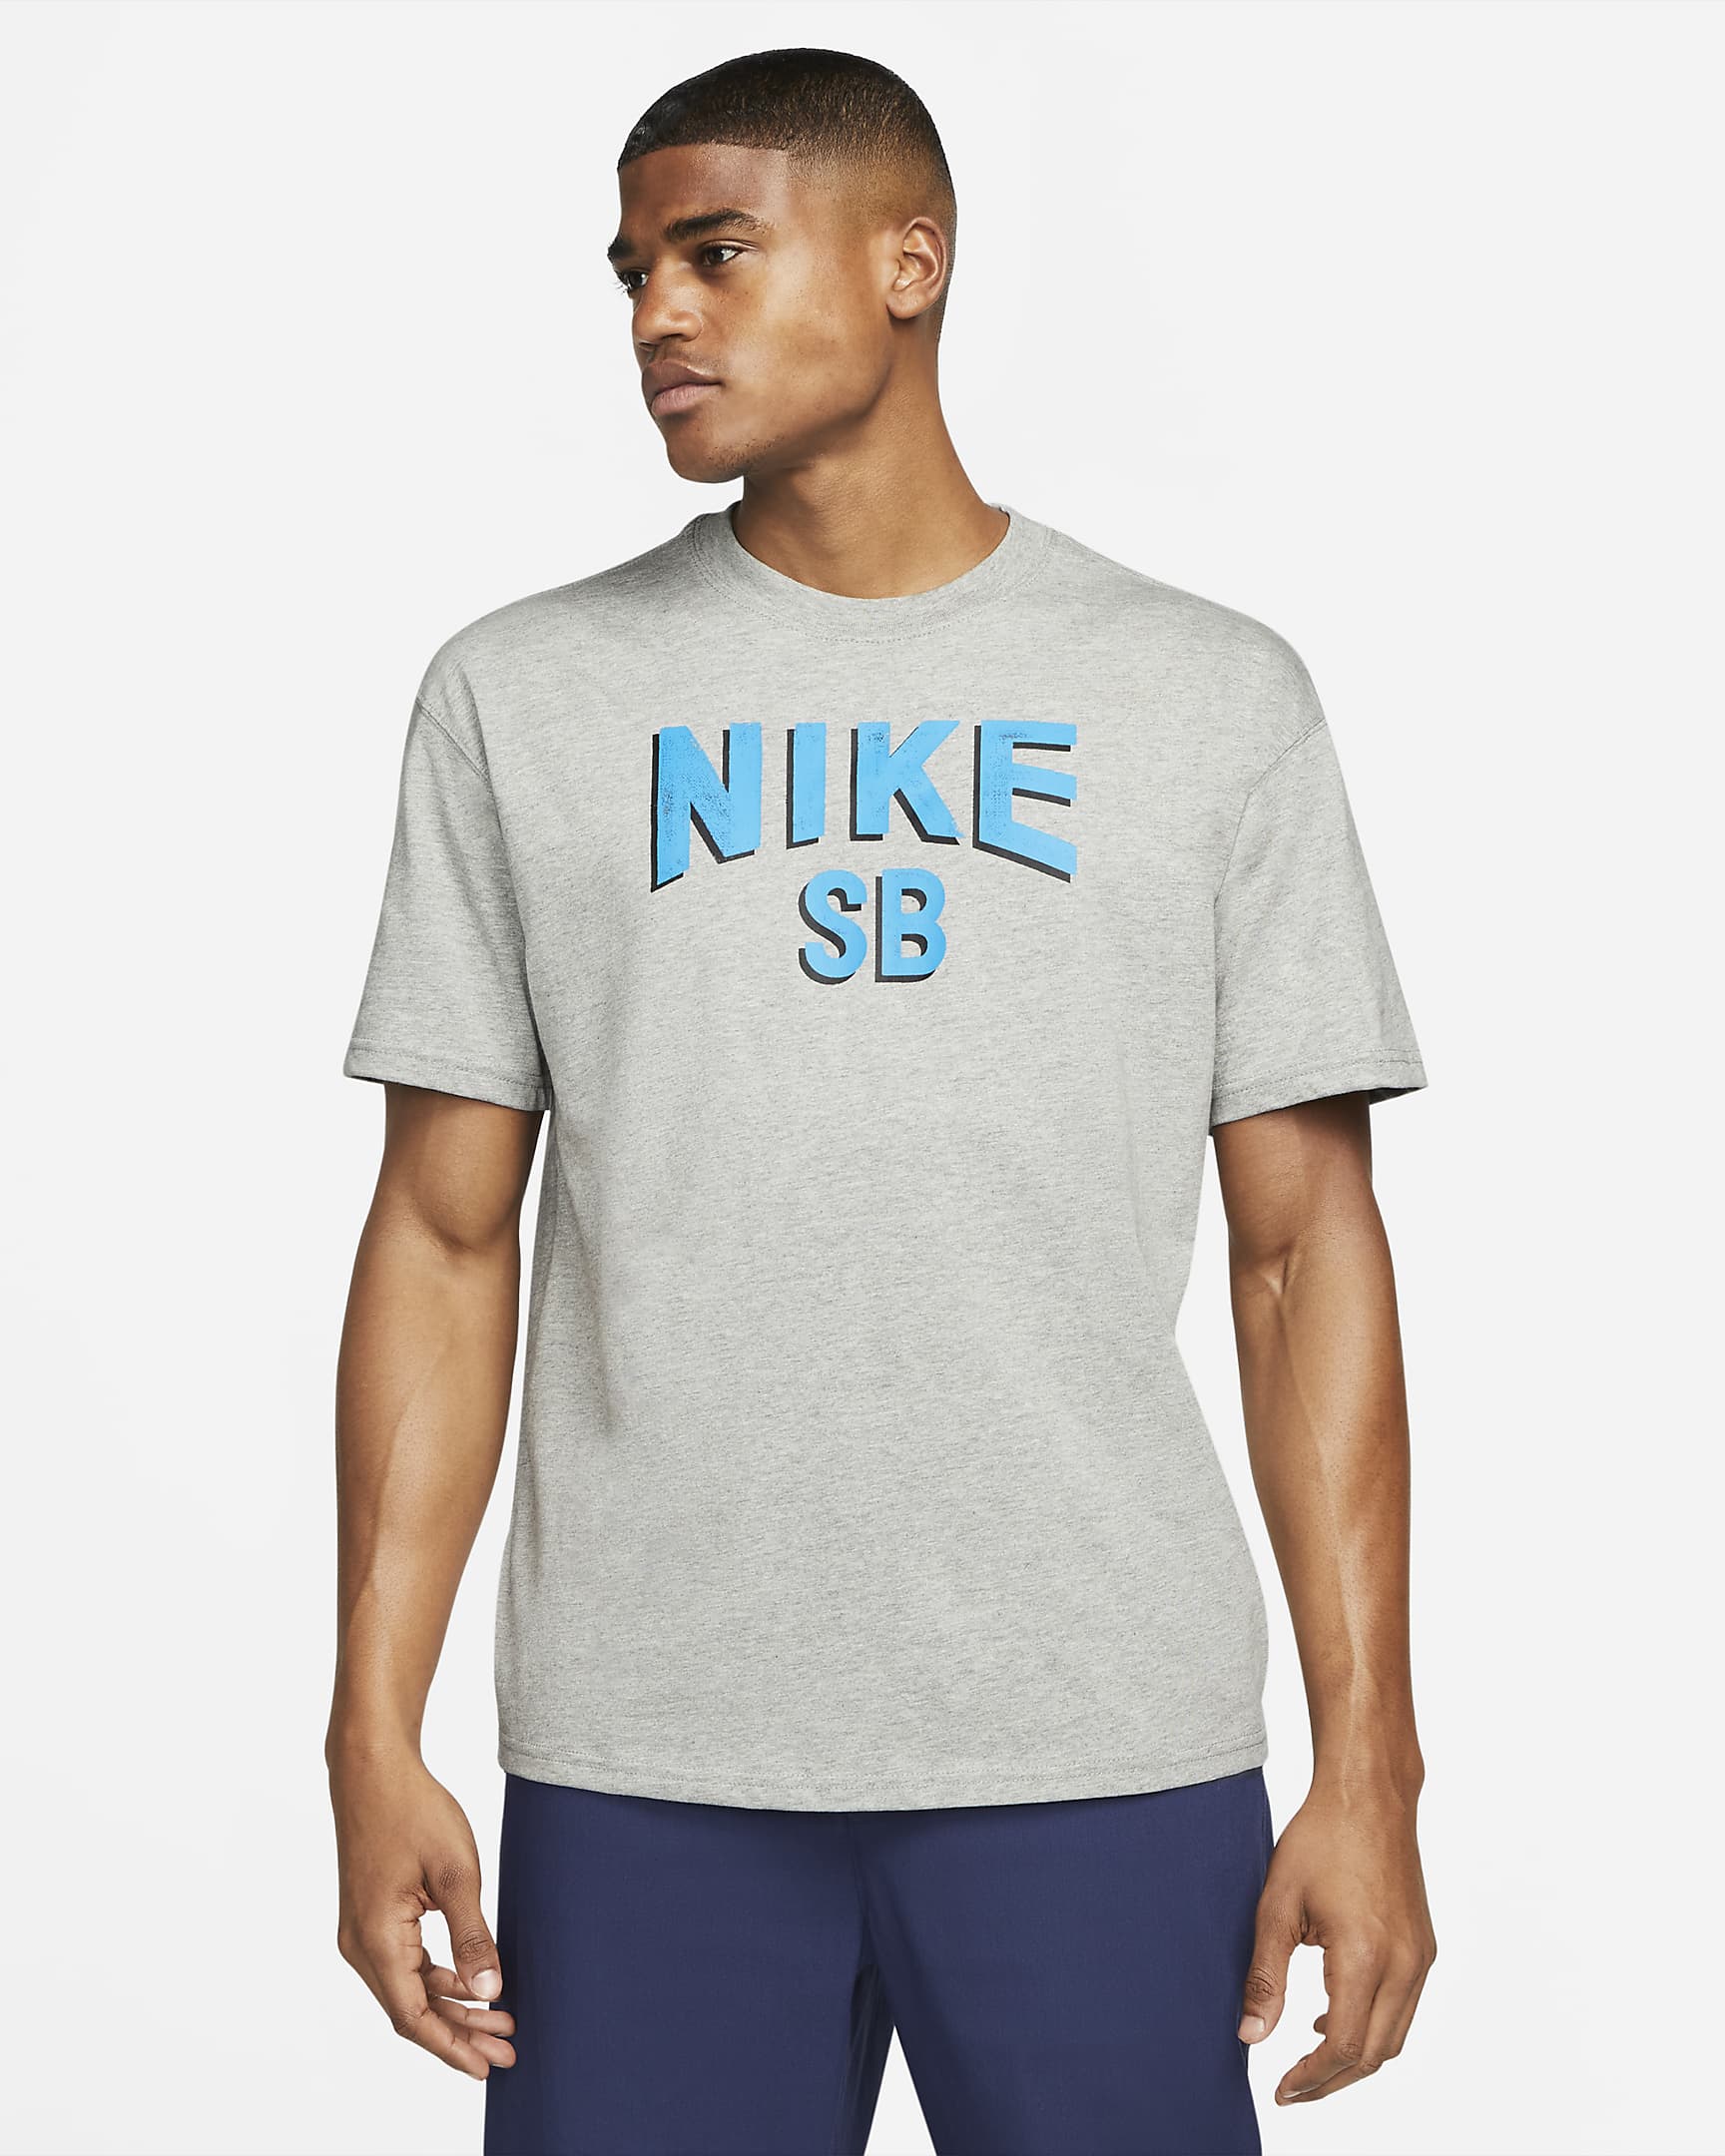 Nike SB Skate T-Shirt Dark Grey Heather